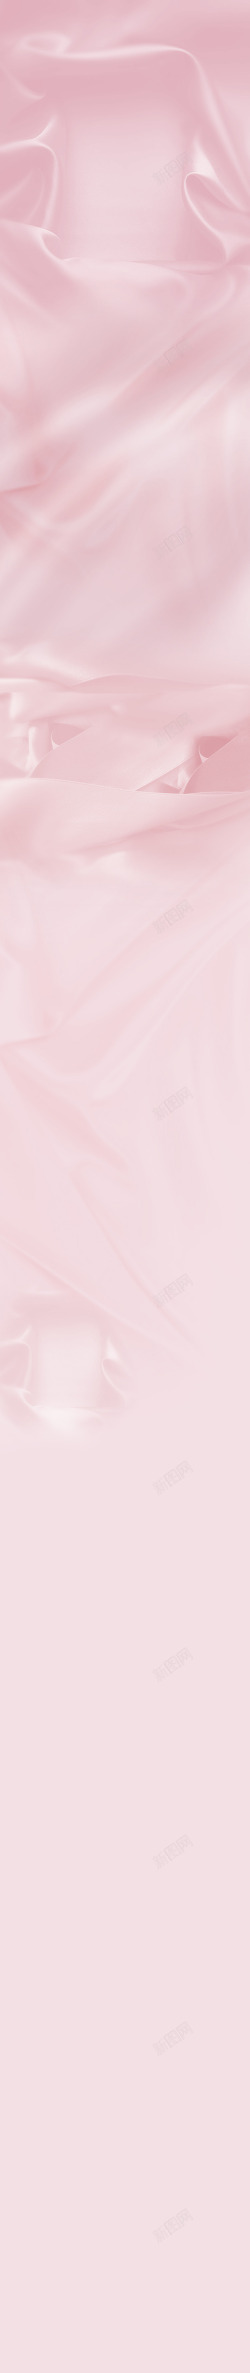 天猫背景粉红色素材